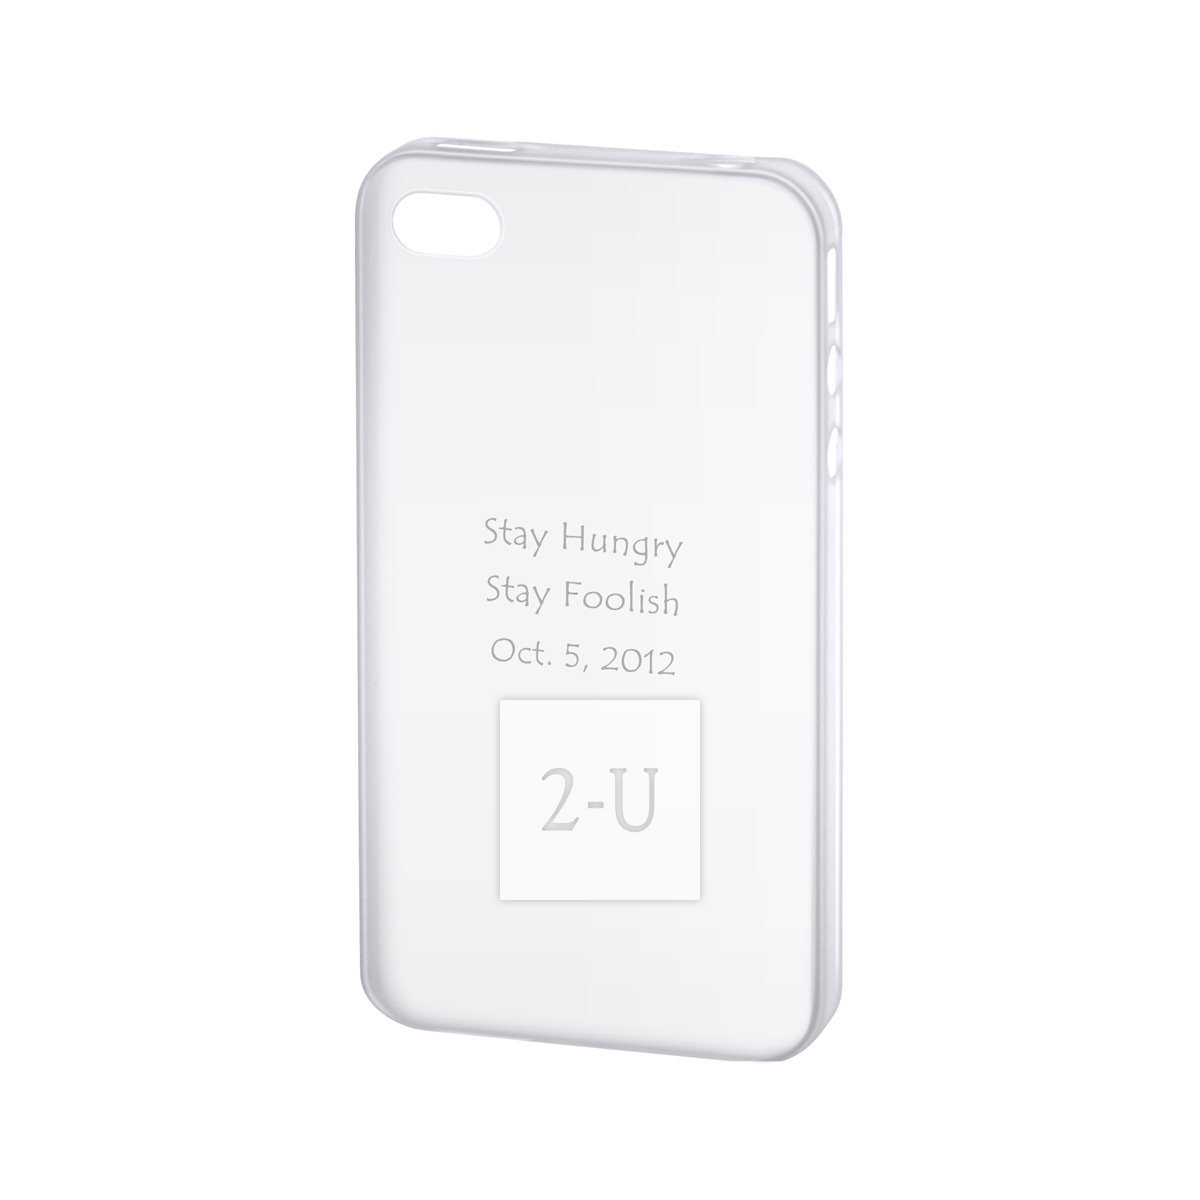 蘋果 Apple iPhone 4/4S 外殼手機保護殼 超薄磨砂型